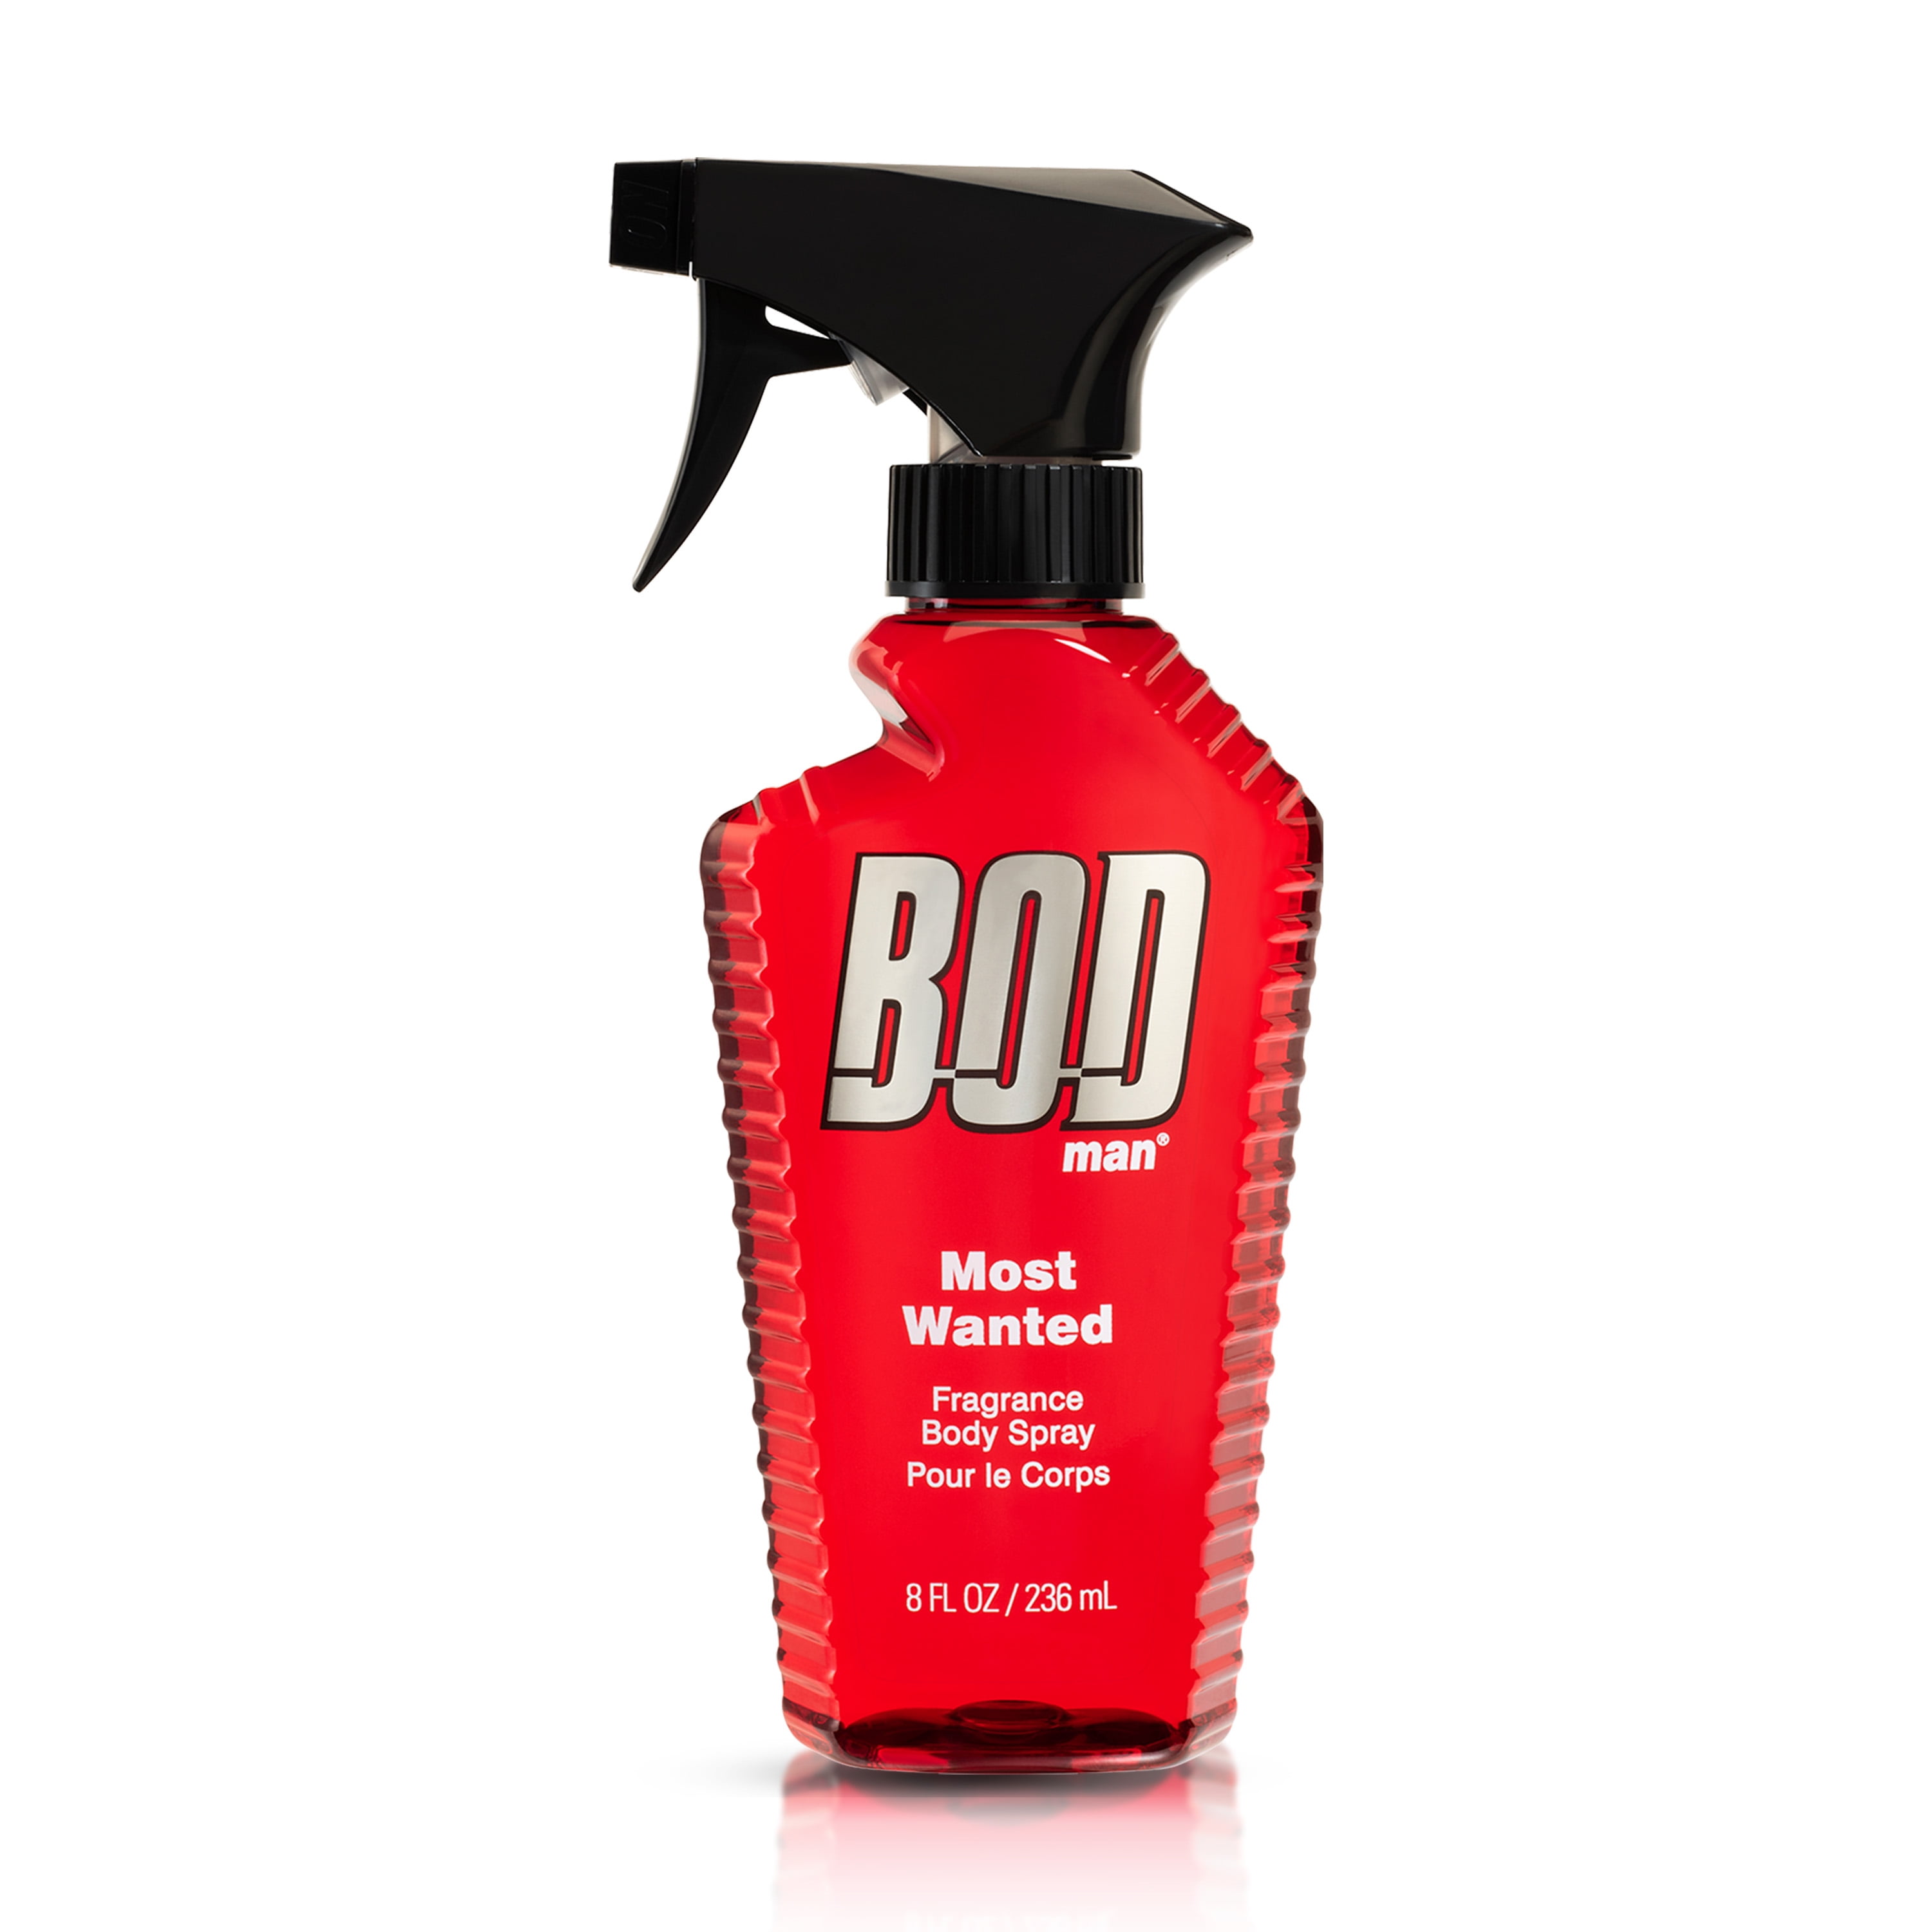 BOD Man Fragrance Body Spray, Most Wanted, 8 fl oz - Walmart.com